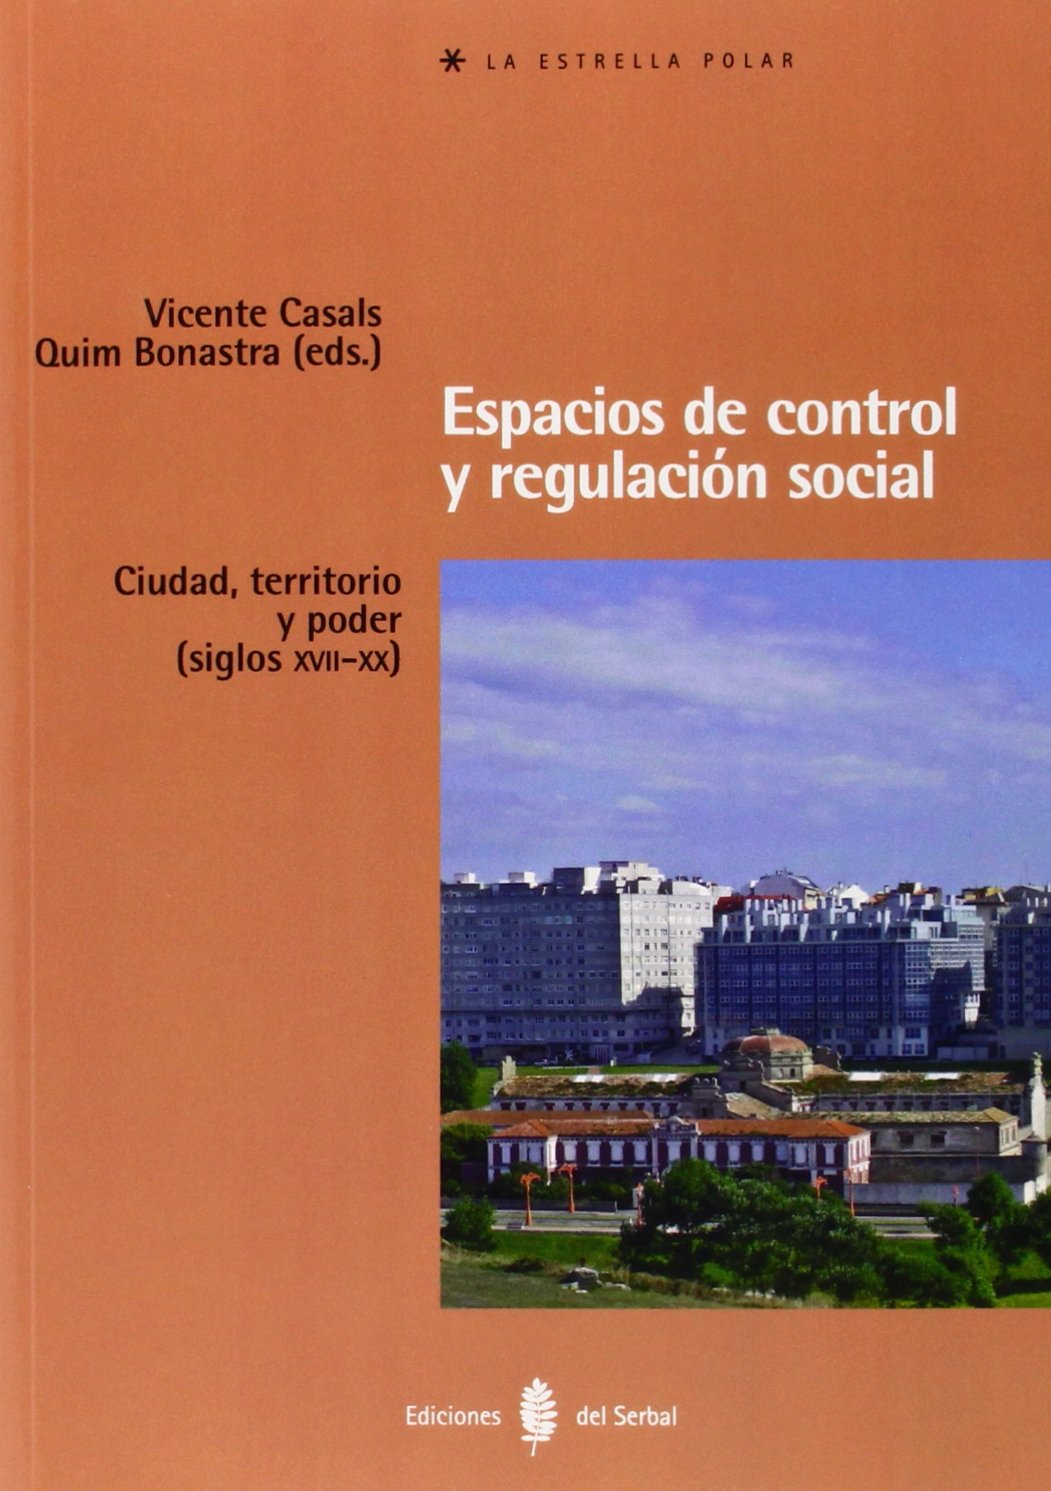 Imagen de portada del libro Espacios de control y regulación social